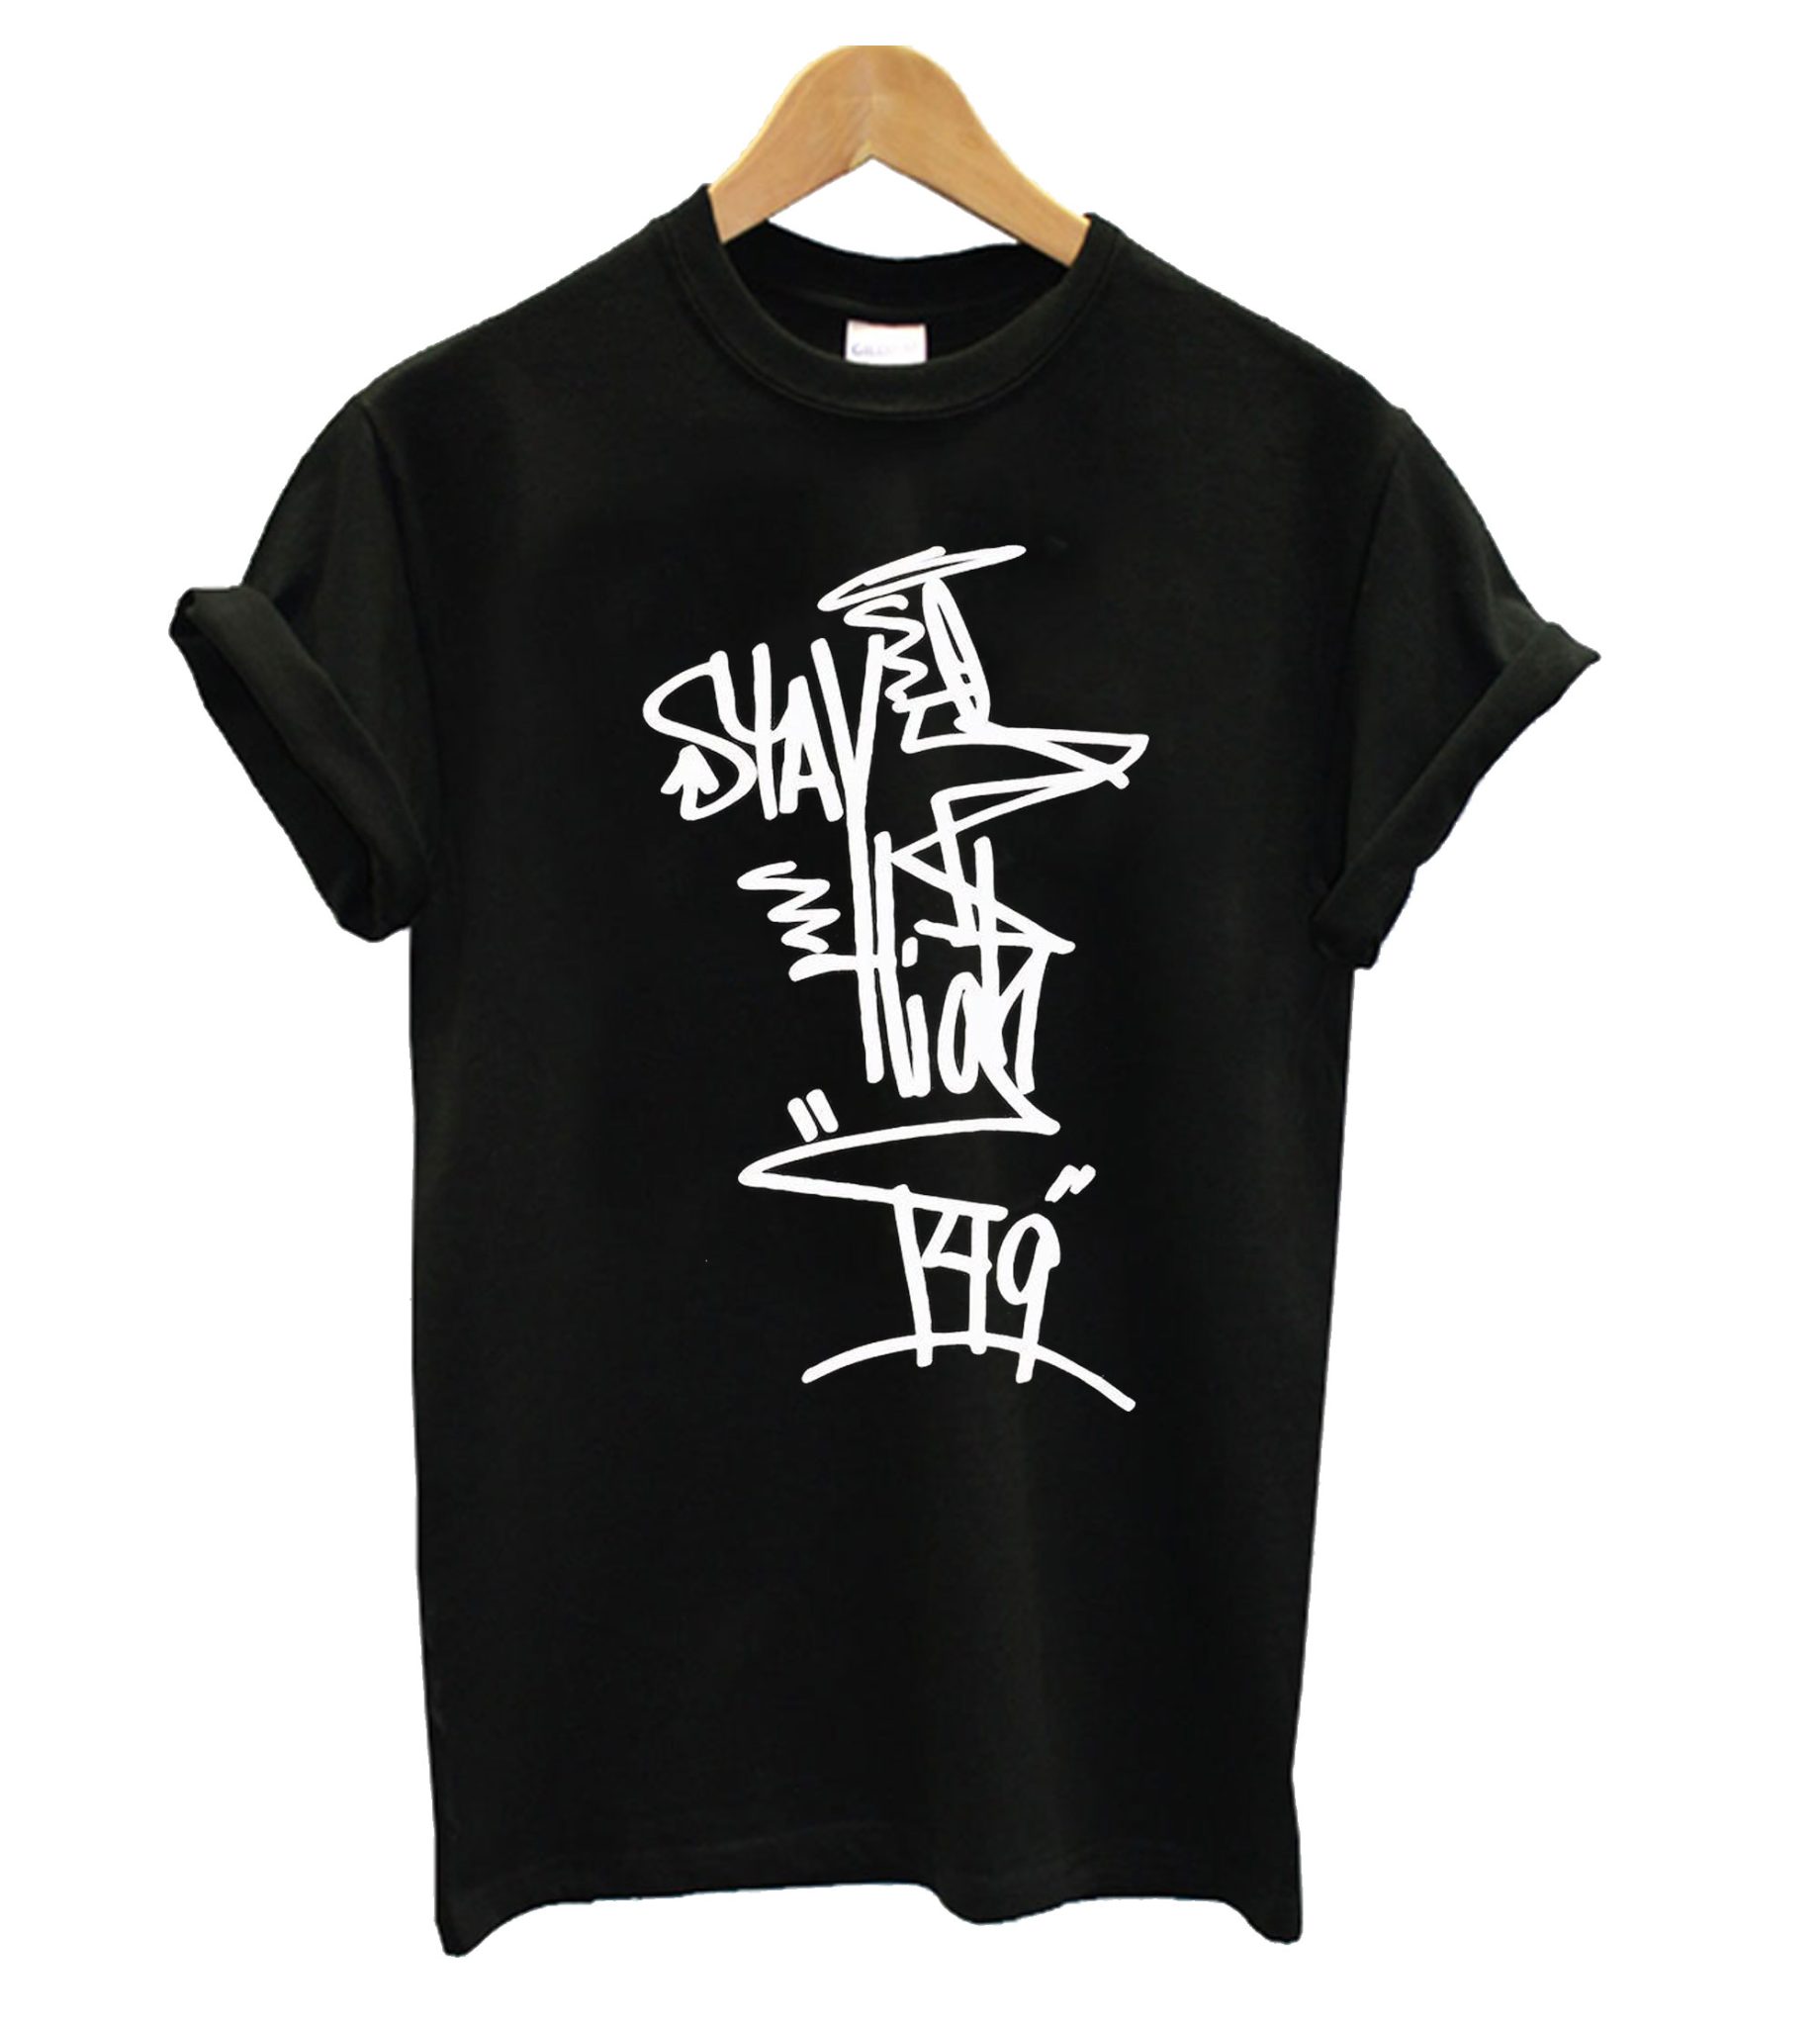 HUF x Stay High 149 Full Tag T shirt